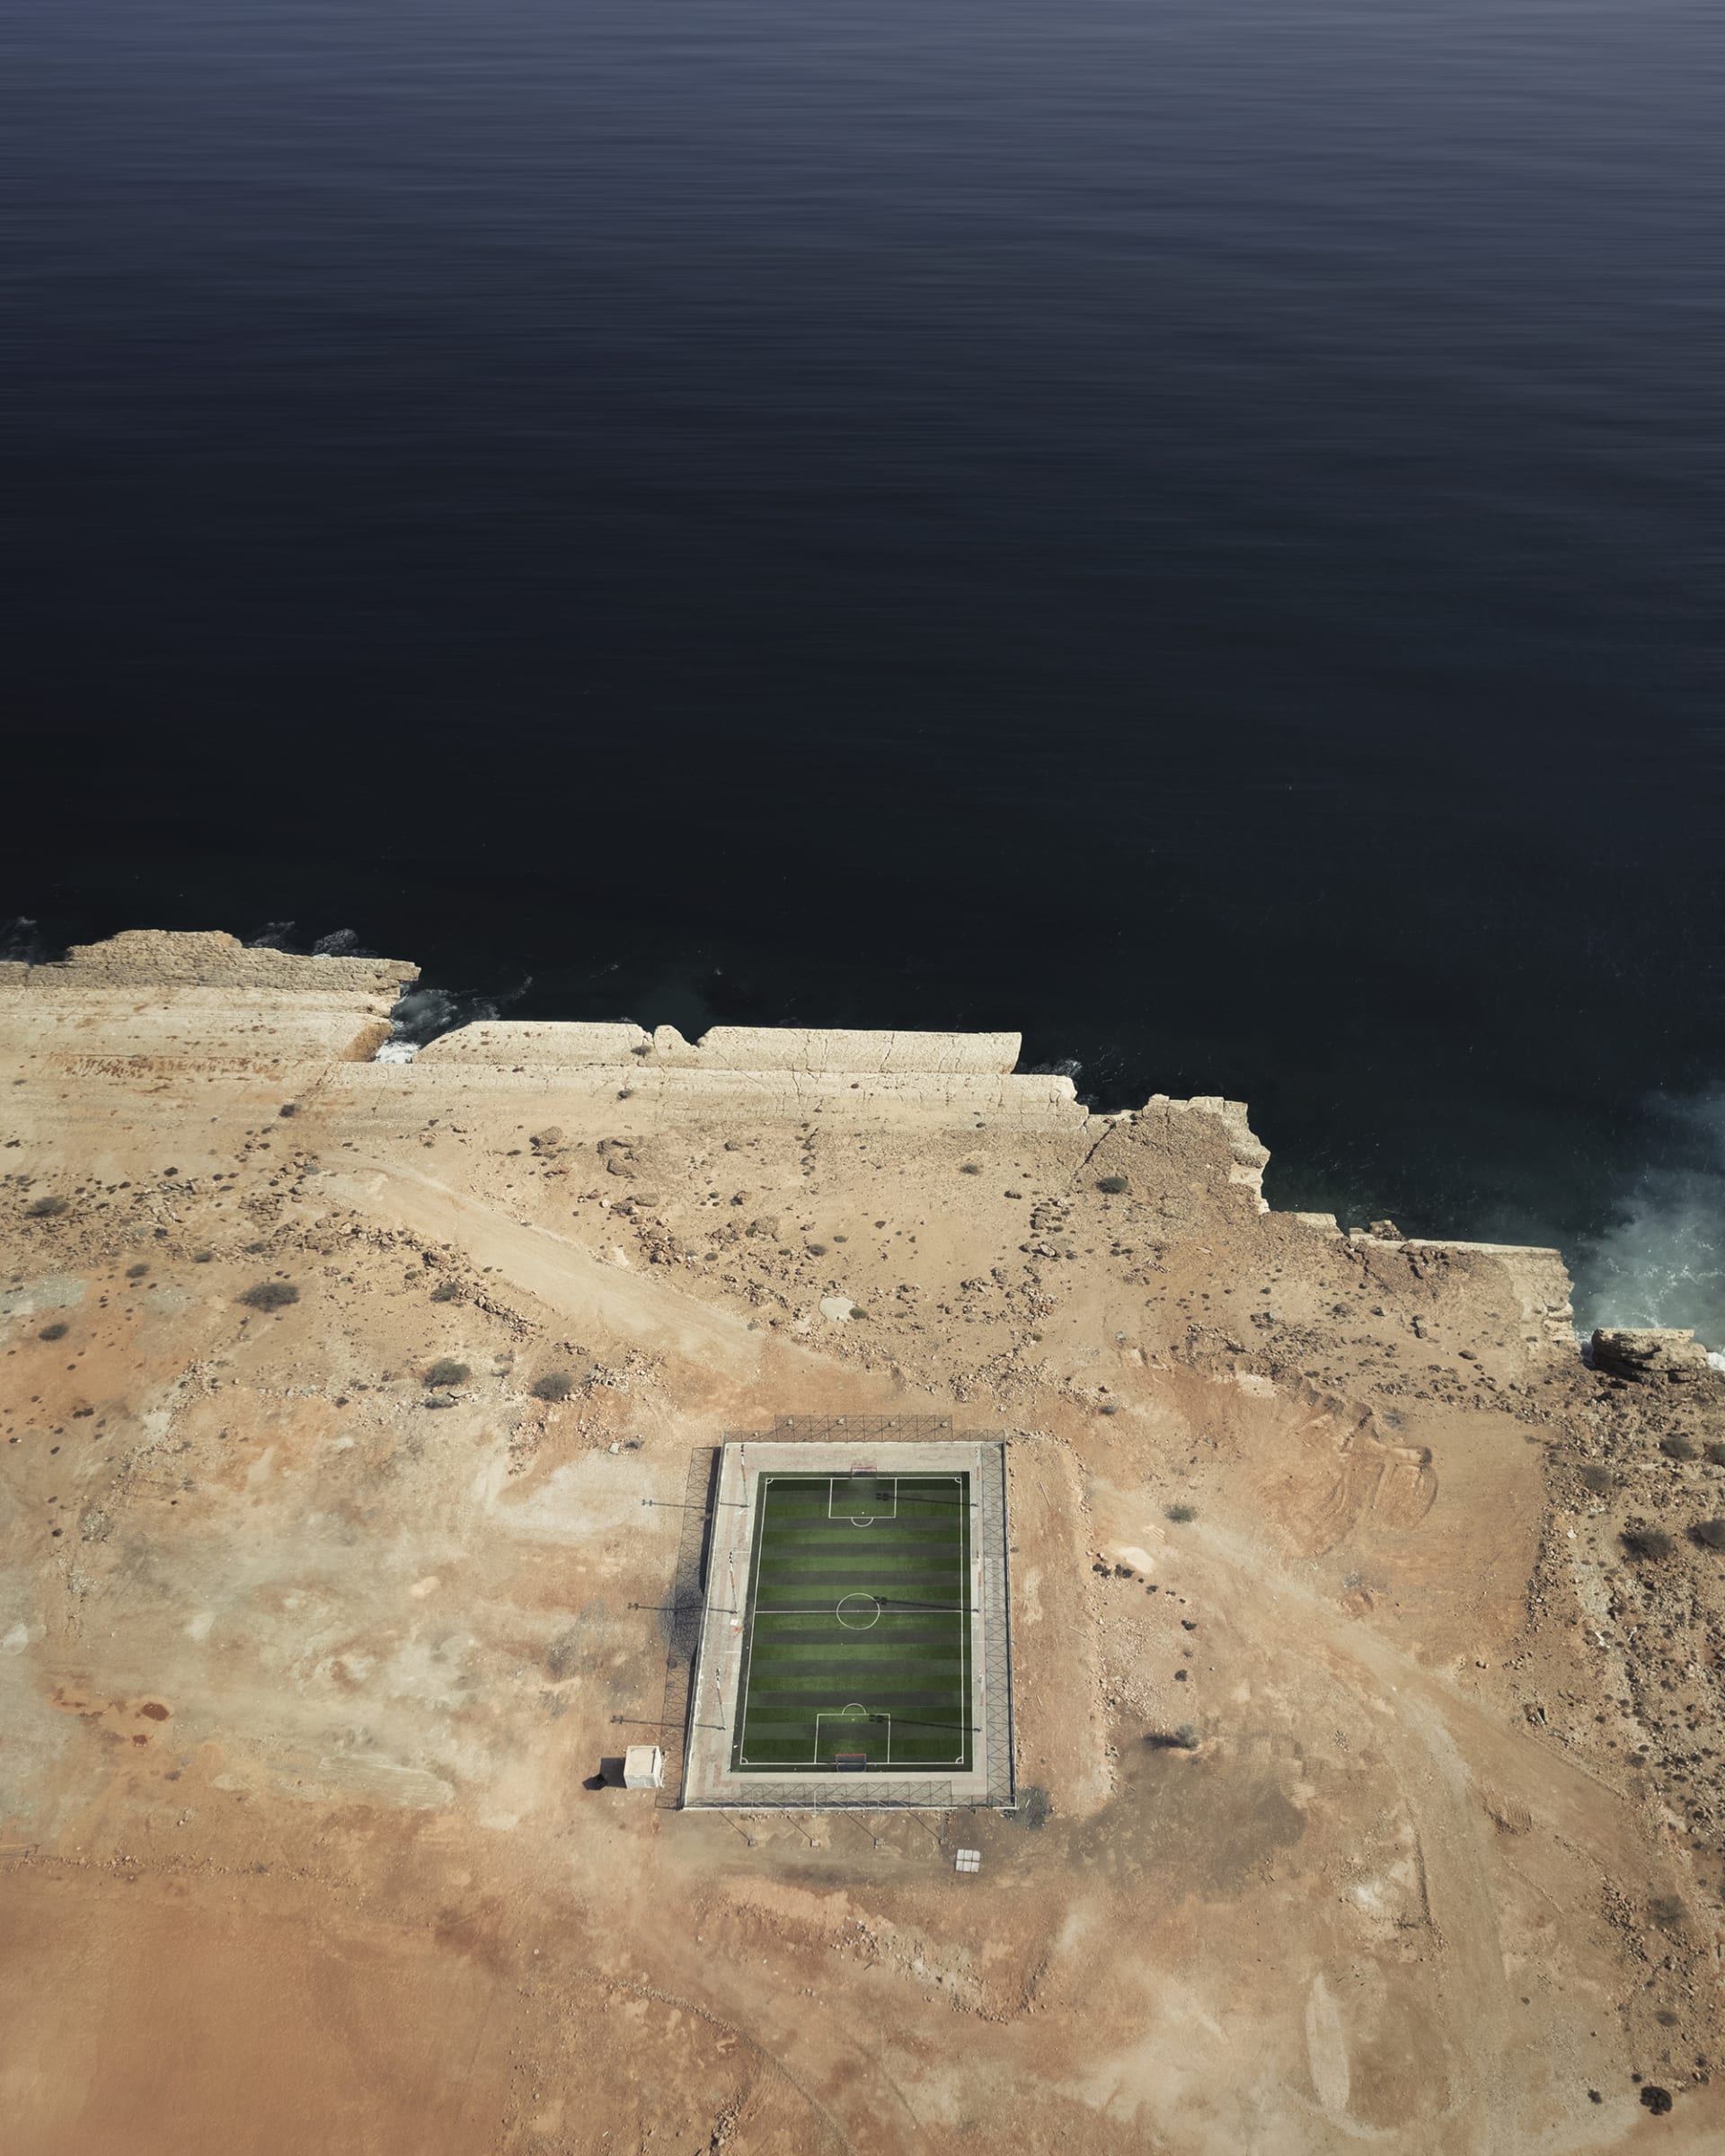 حقيقة أم "فوتوشوب"..ملعب كرة قدم مخبأ وسط الطبيعة يثير الحيرة في سلطنة عمان